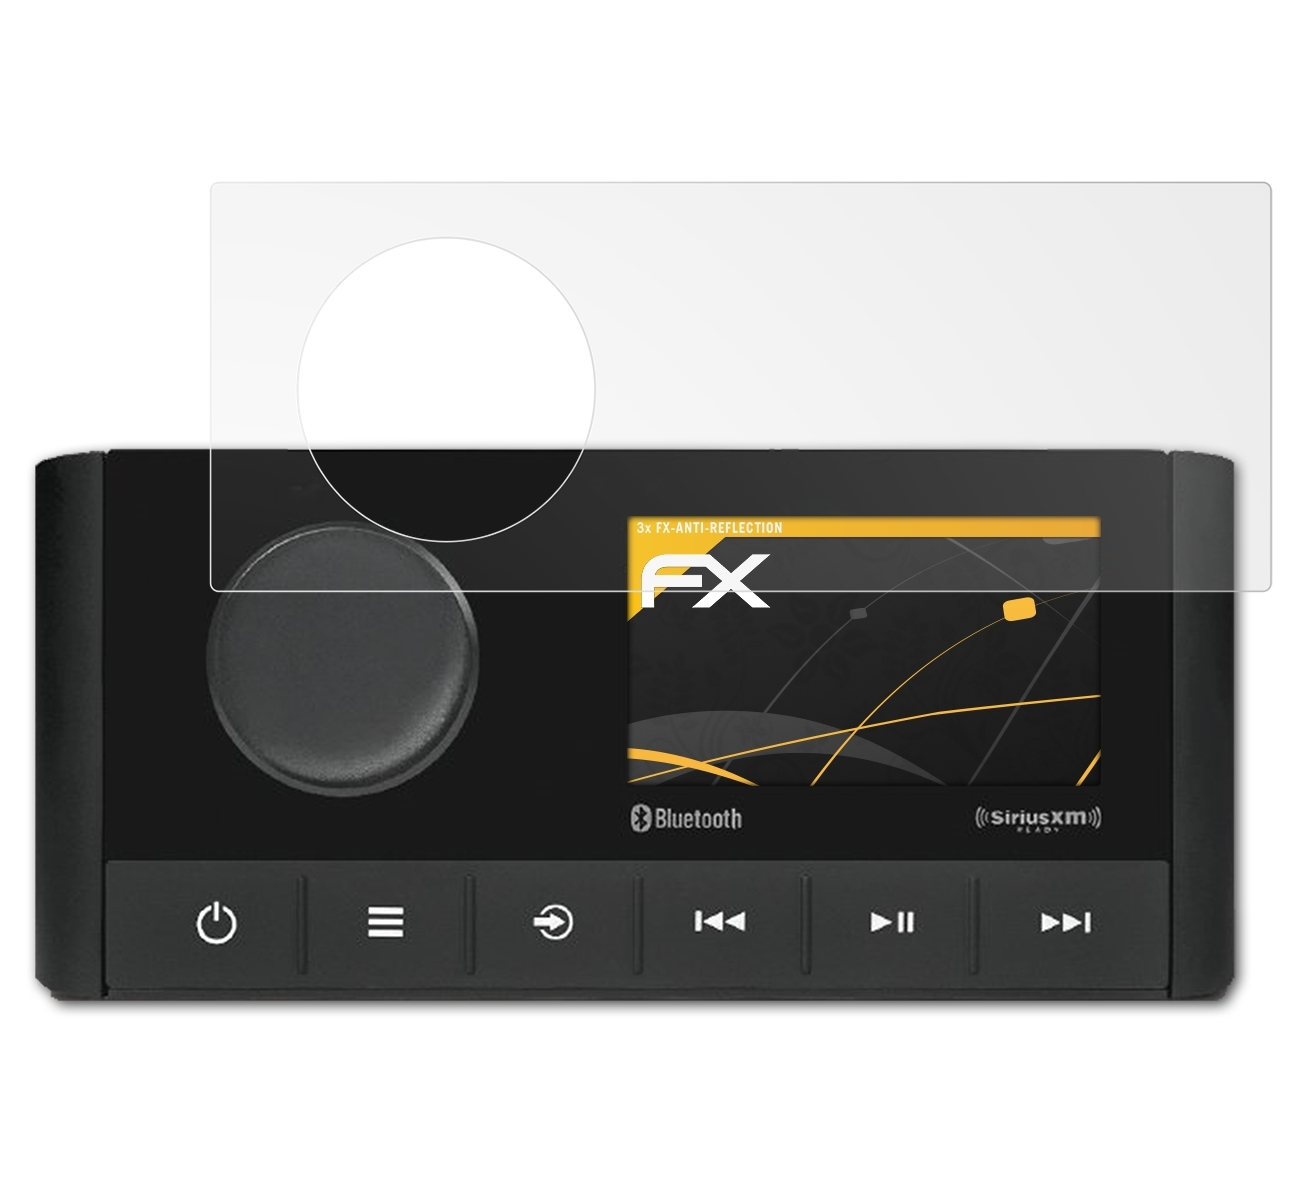 Fusion FX-Antireflex Displayschutz(für ATFOLIX MS-RA210) 3x Garmin